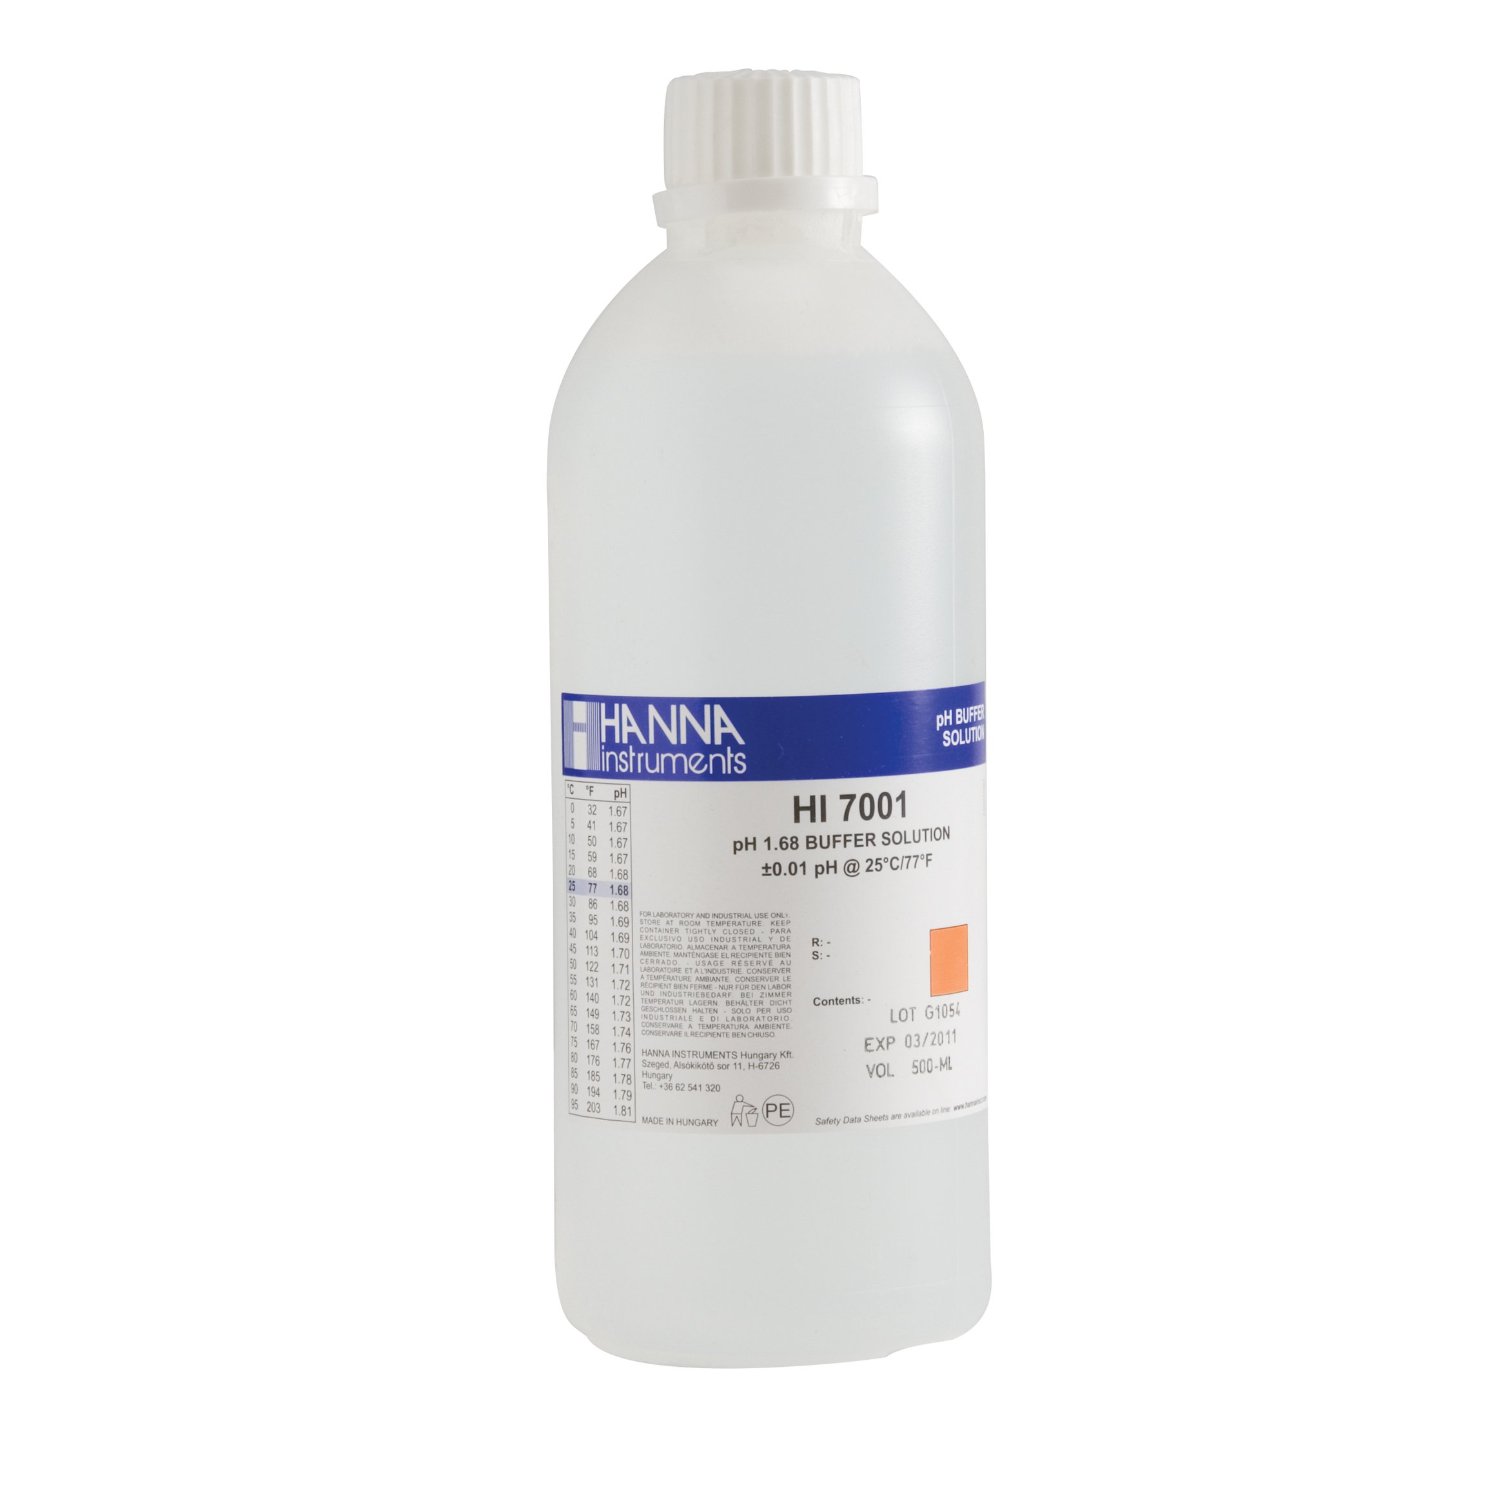 Kalibrierlösung pH 1,68; Standardqualität, 500mL-Flasche